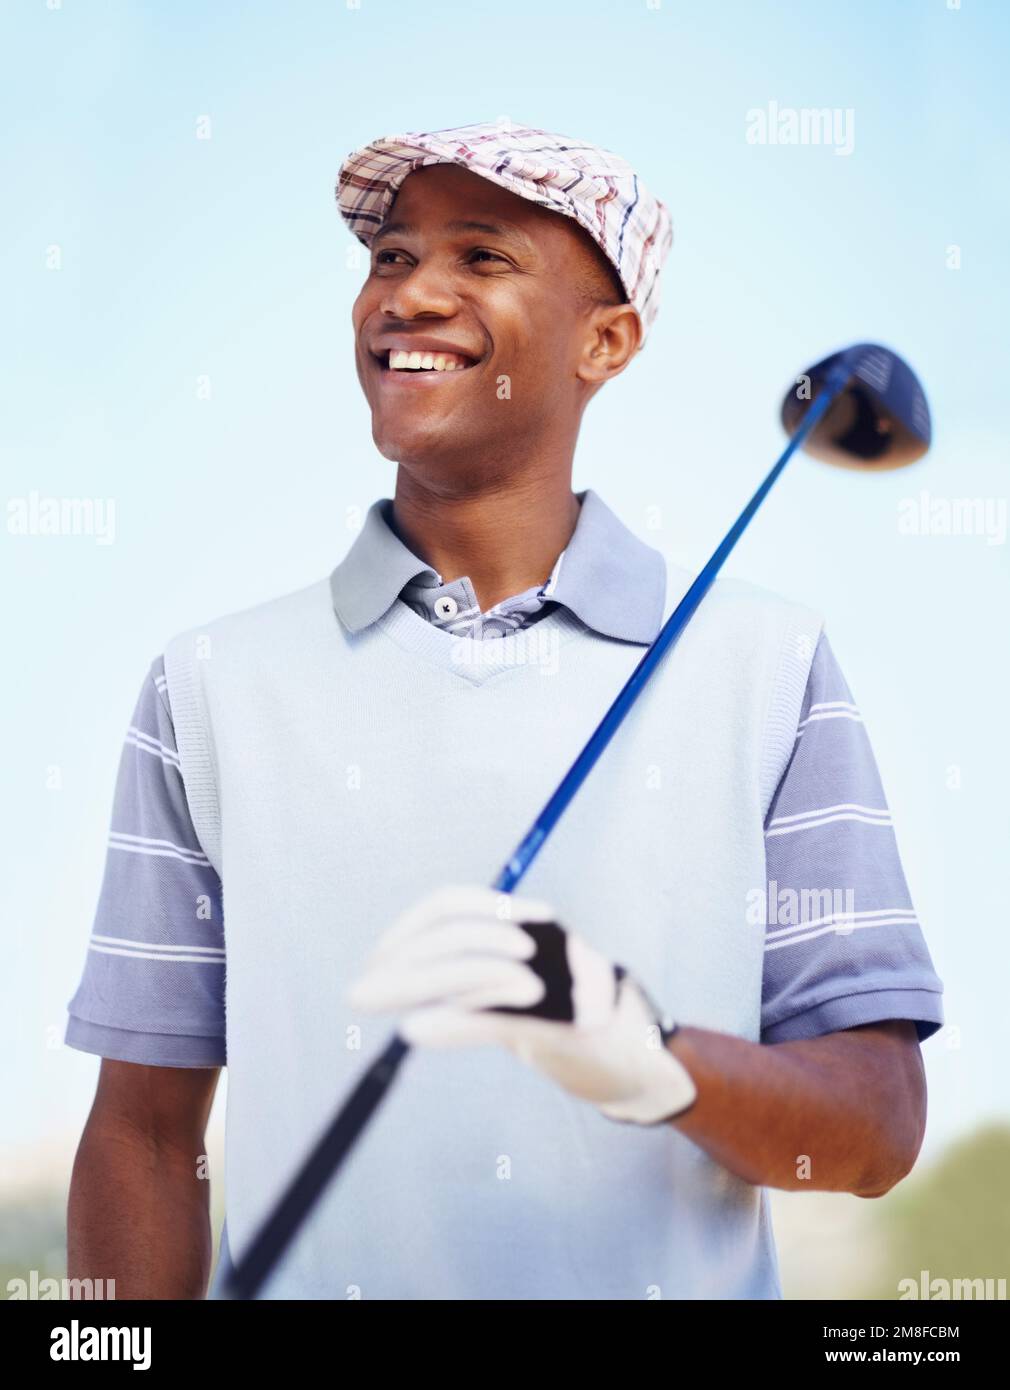 Sein Golfspiel hat sich weit entwickelt. Ein souveräner afroamerikanischer Golfspieler mit einem Fahrer. Stockfoto